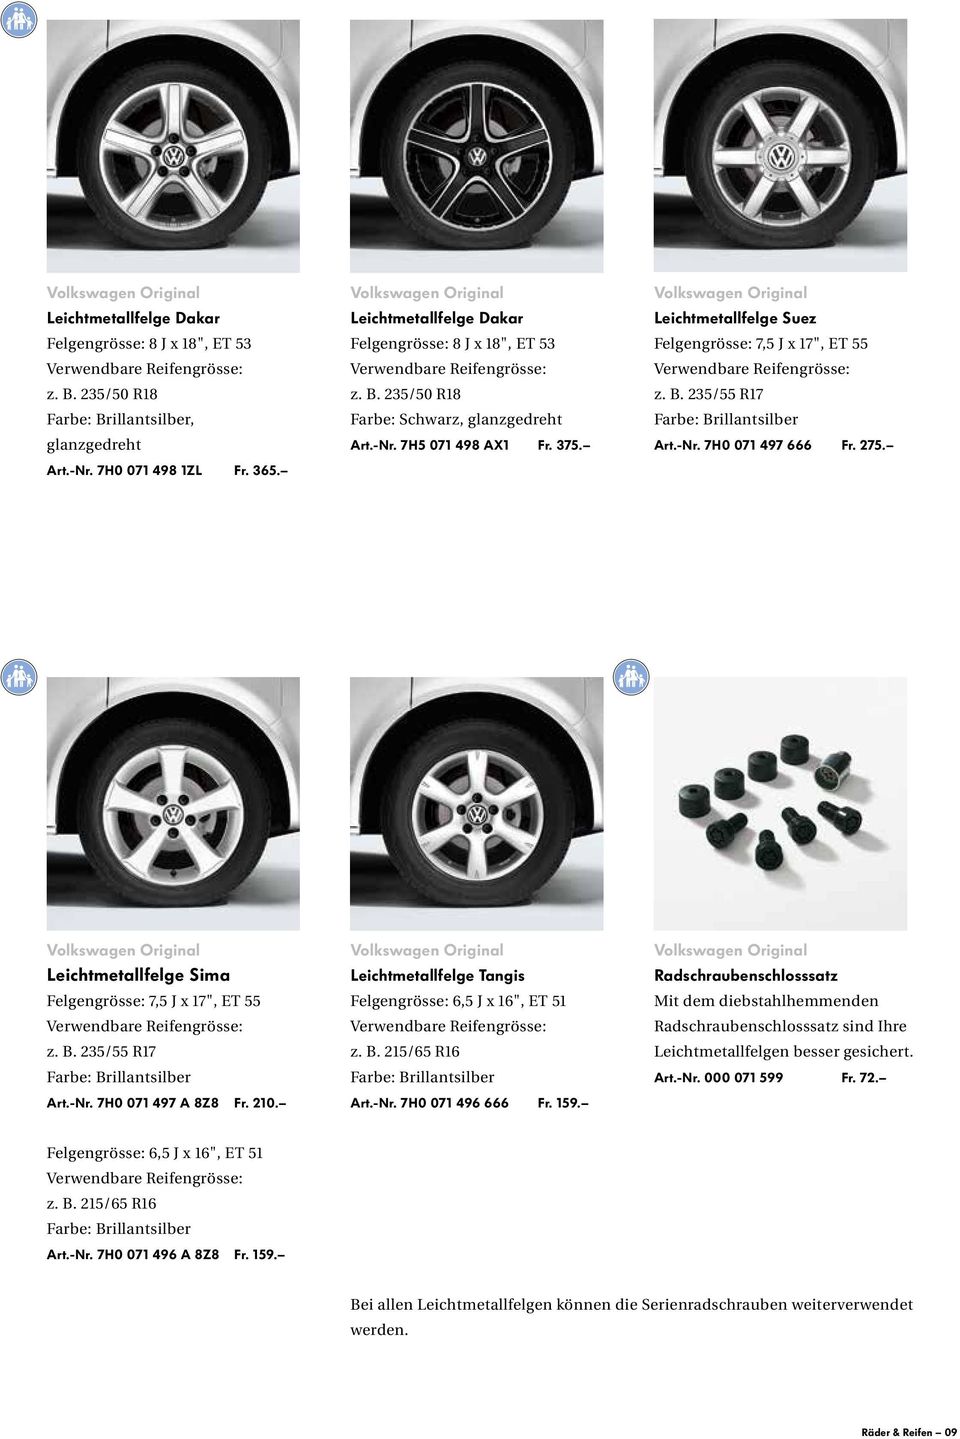 Volkswagen Original Leichtmetallfelge Suez Felgengrösse: 7,5 J x 17", ET 55 Verwendbare Reifengrösse: z. B. 235/55 R17 Farbe: Brillantsilber Art.-Nr. 7H0 071 497 666 Fr. 275.